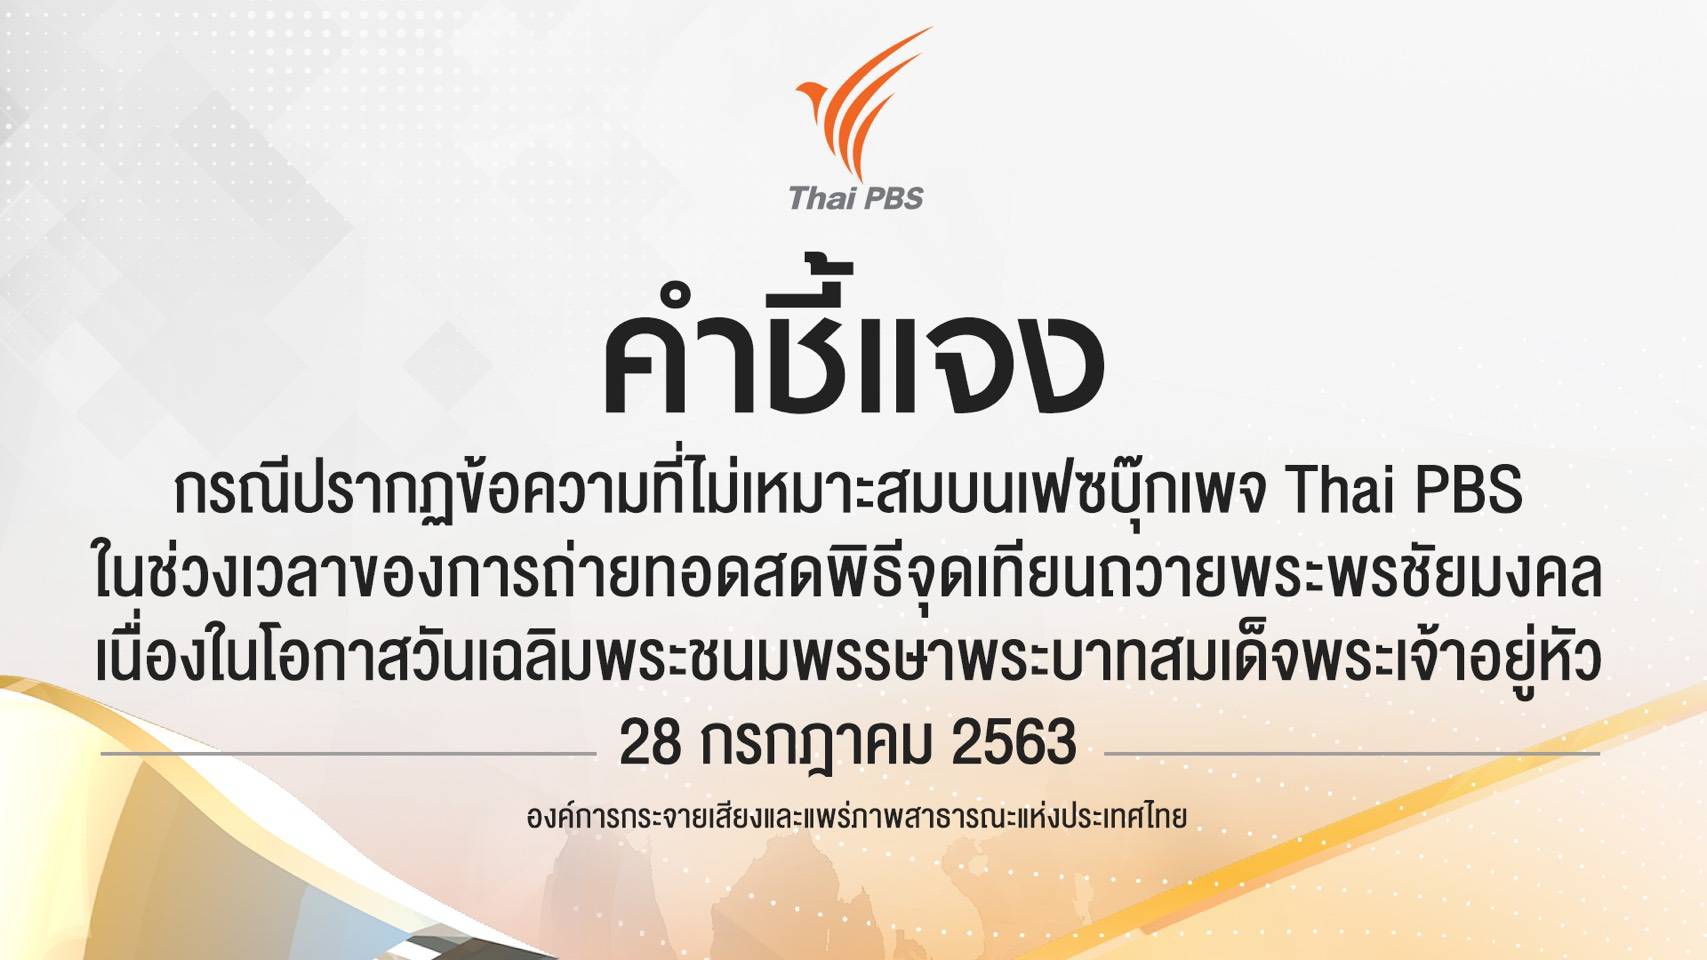 ไทยพีบีเอสชี้แจง กรณีปรากฏข้อความที่ไม่เหมาะสมบนเฟซบุ๊กเพจ Thai PBS 